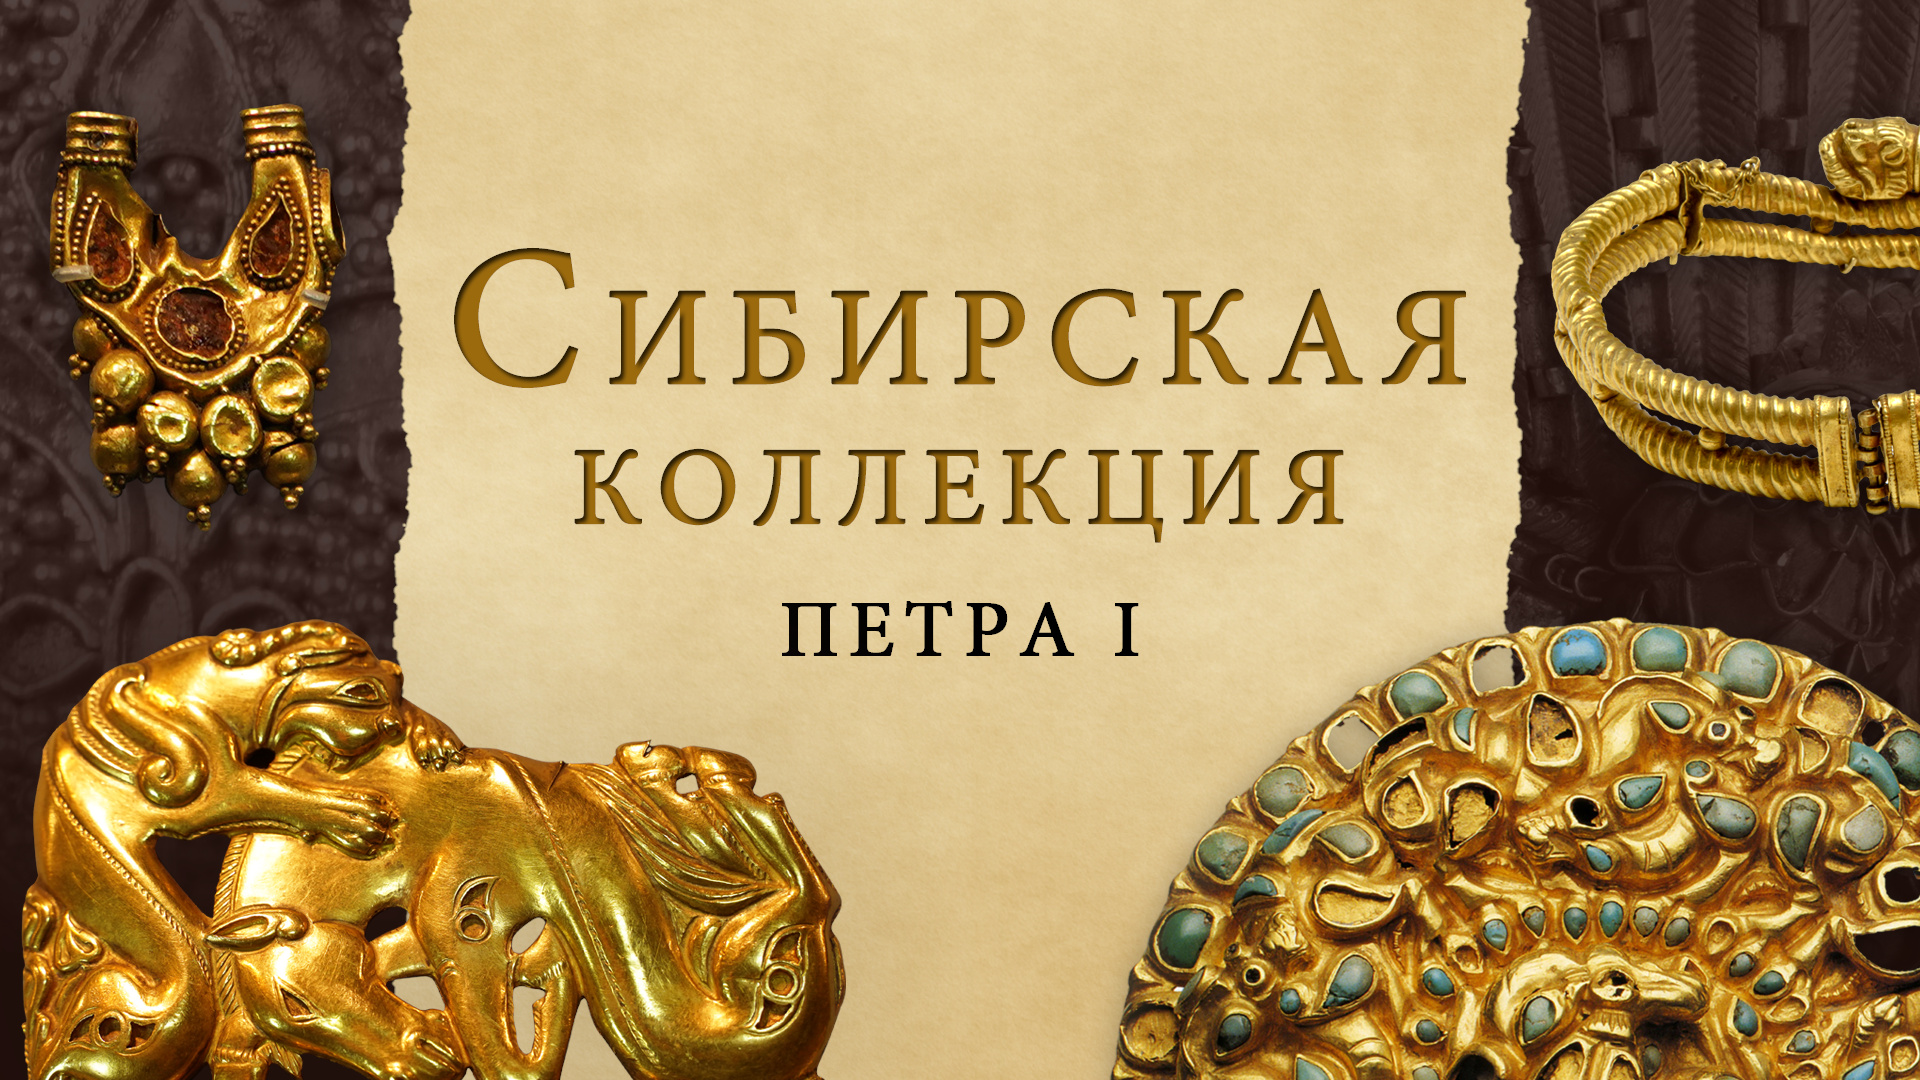 Сибирская коллекция Петра I